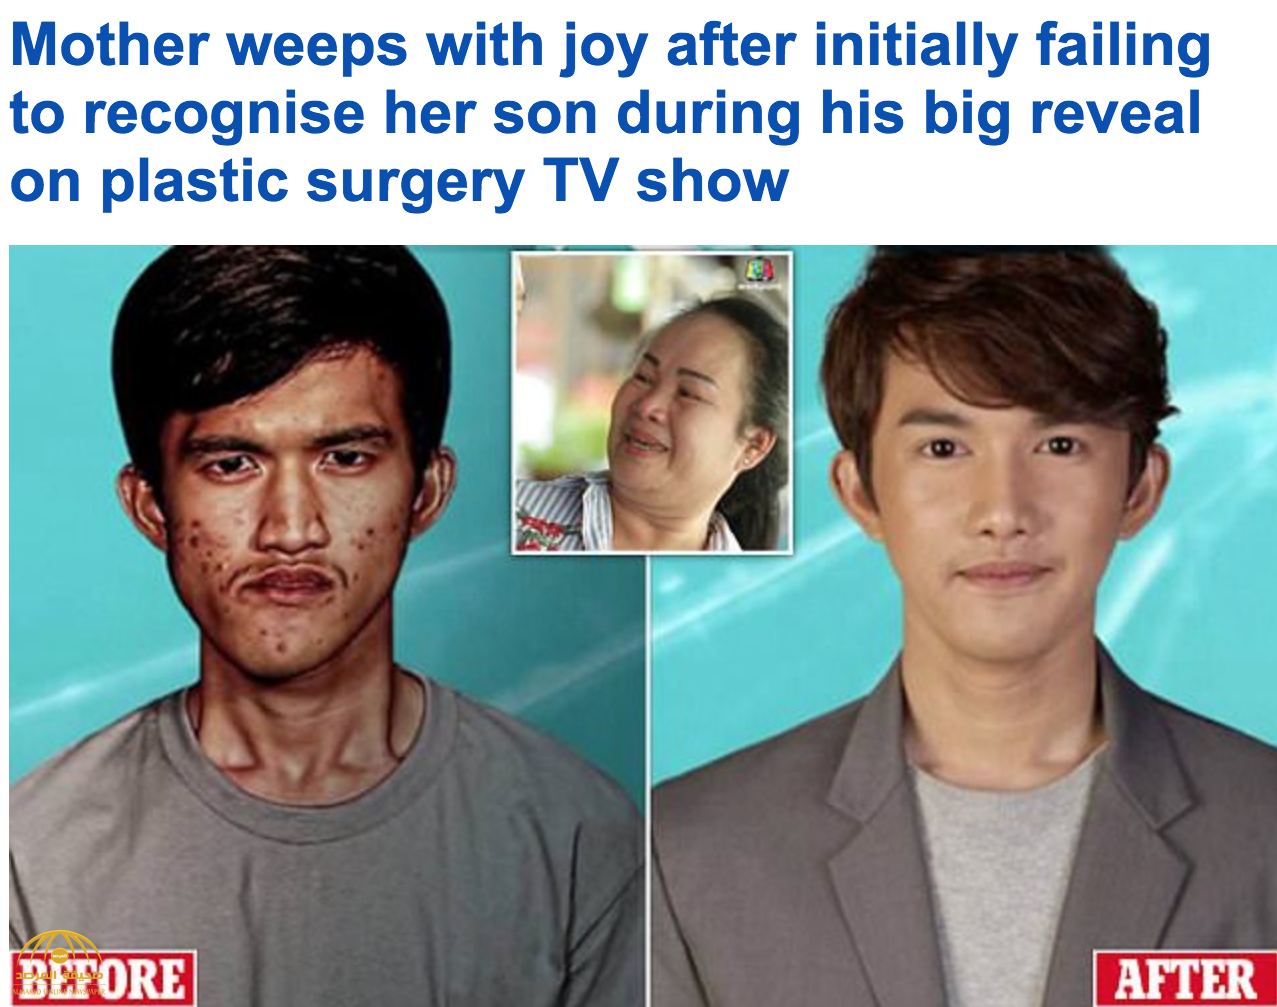 شاهد: كيف غيرت جراحة تجميلية شاب تايلاندي قبيح الوجه إلى آخر وسيم.. ولهذا السبب بكت أمه!